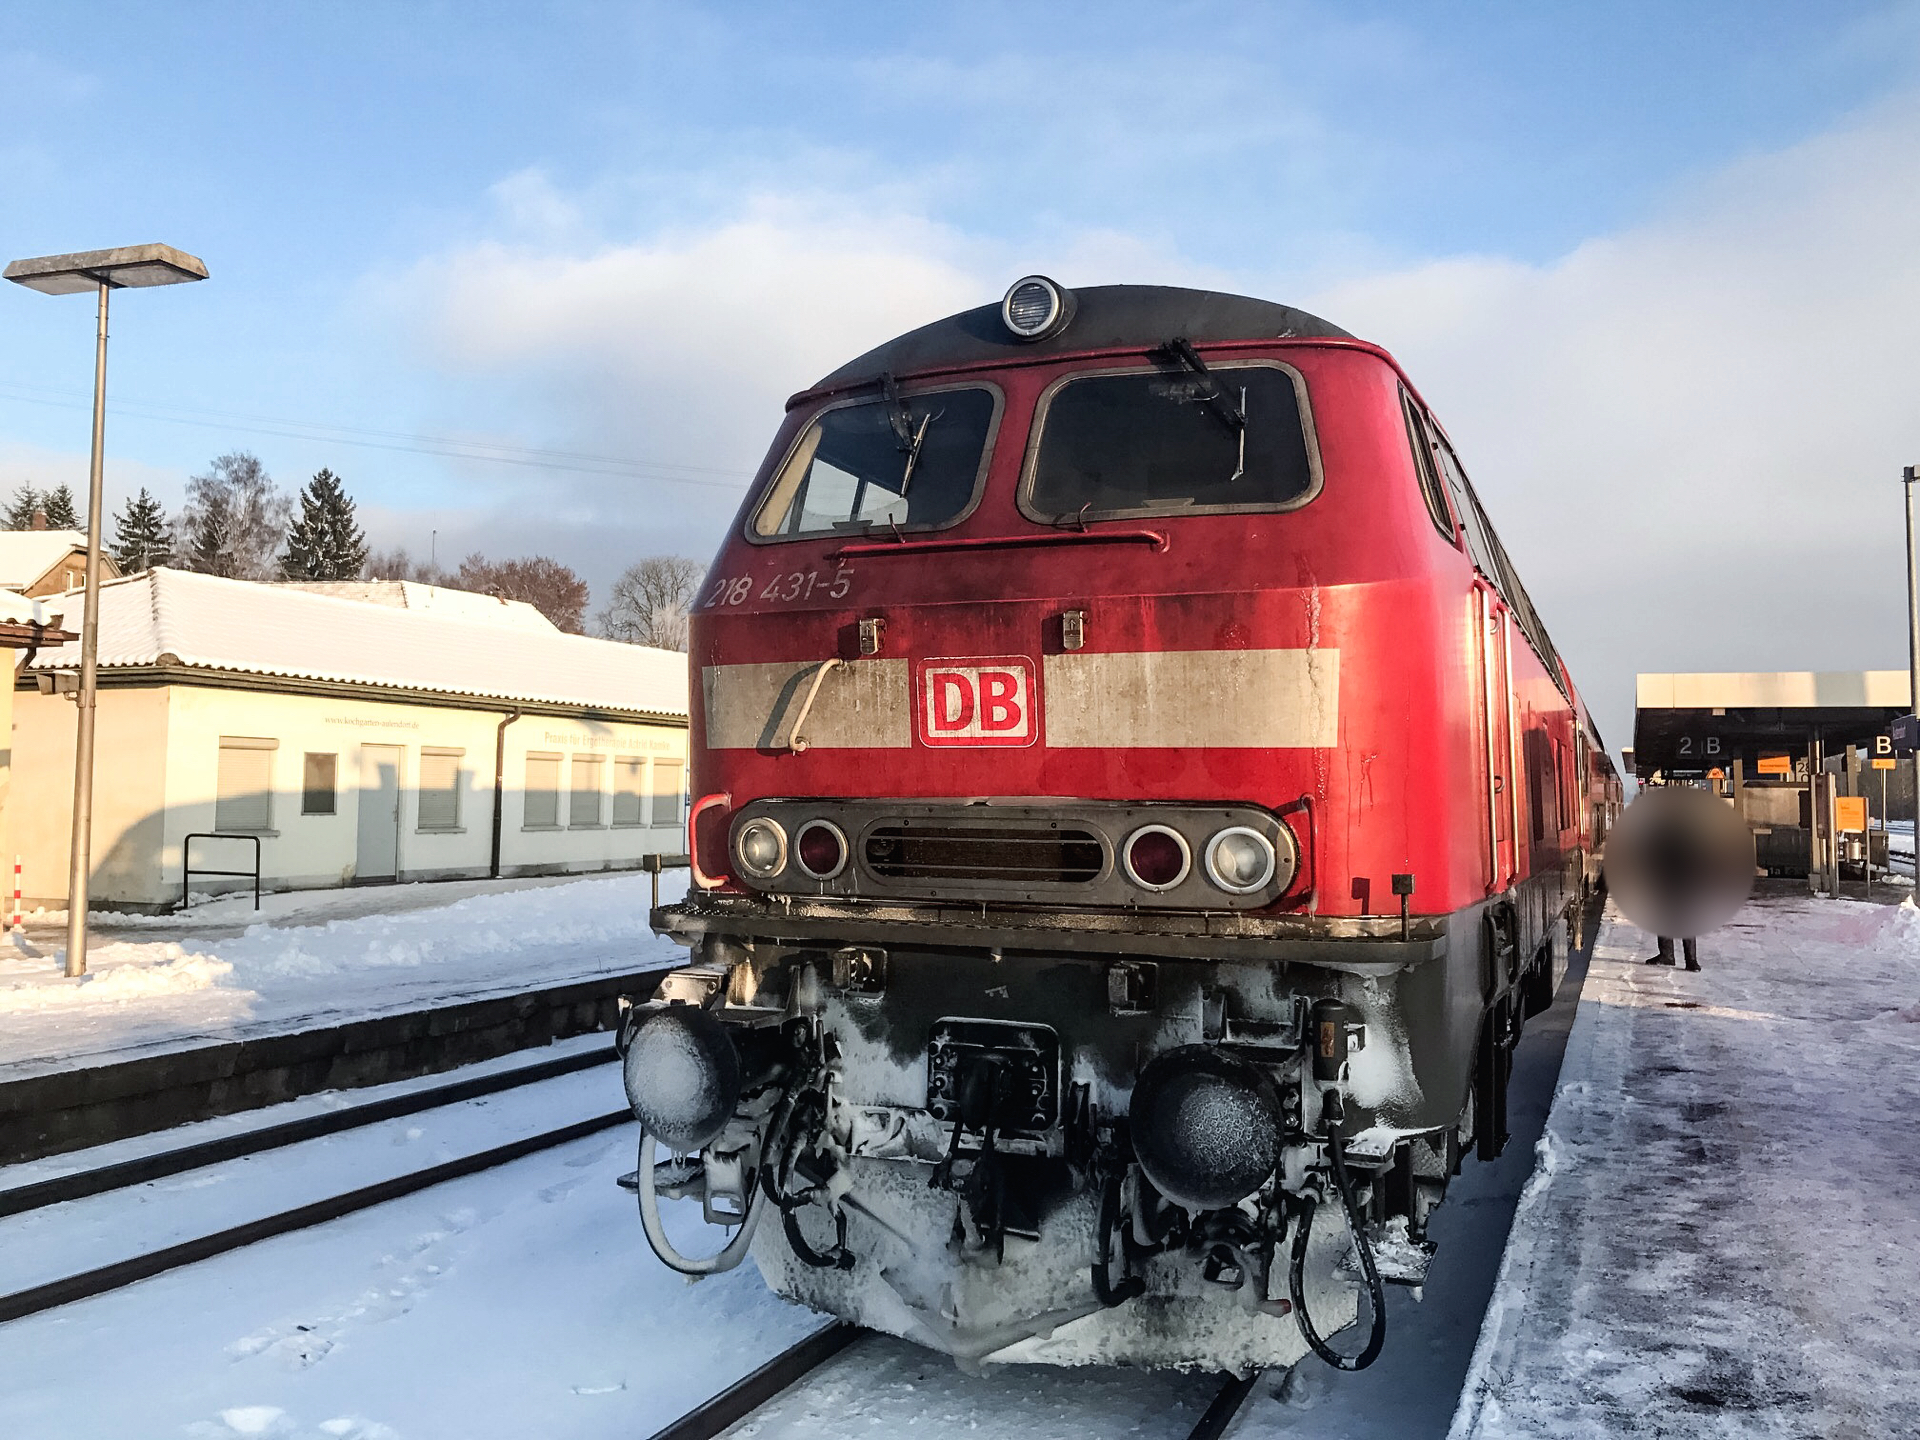 Am 6. Januar 2017 kam es bei Aulendorf zur Rauchentwicklung in einer Diesellok der Baureihe 218. (Foto: © Bundespolizei)